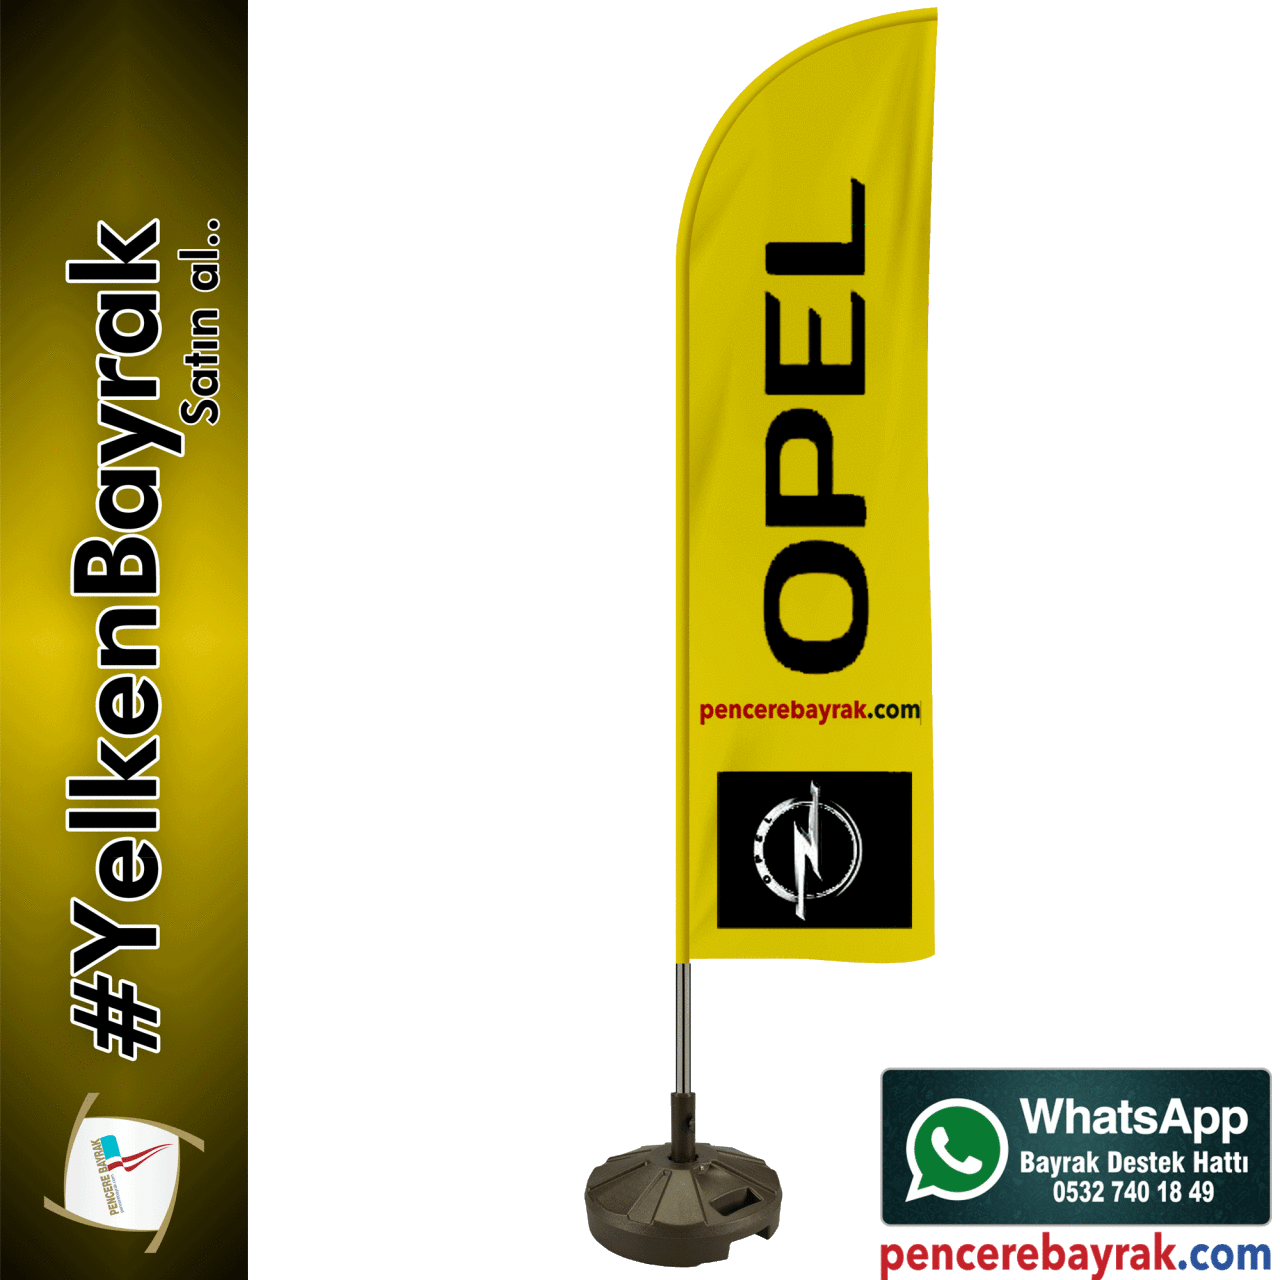 Yelken Bayrağı | Opel Logolu